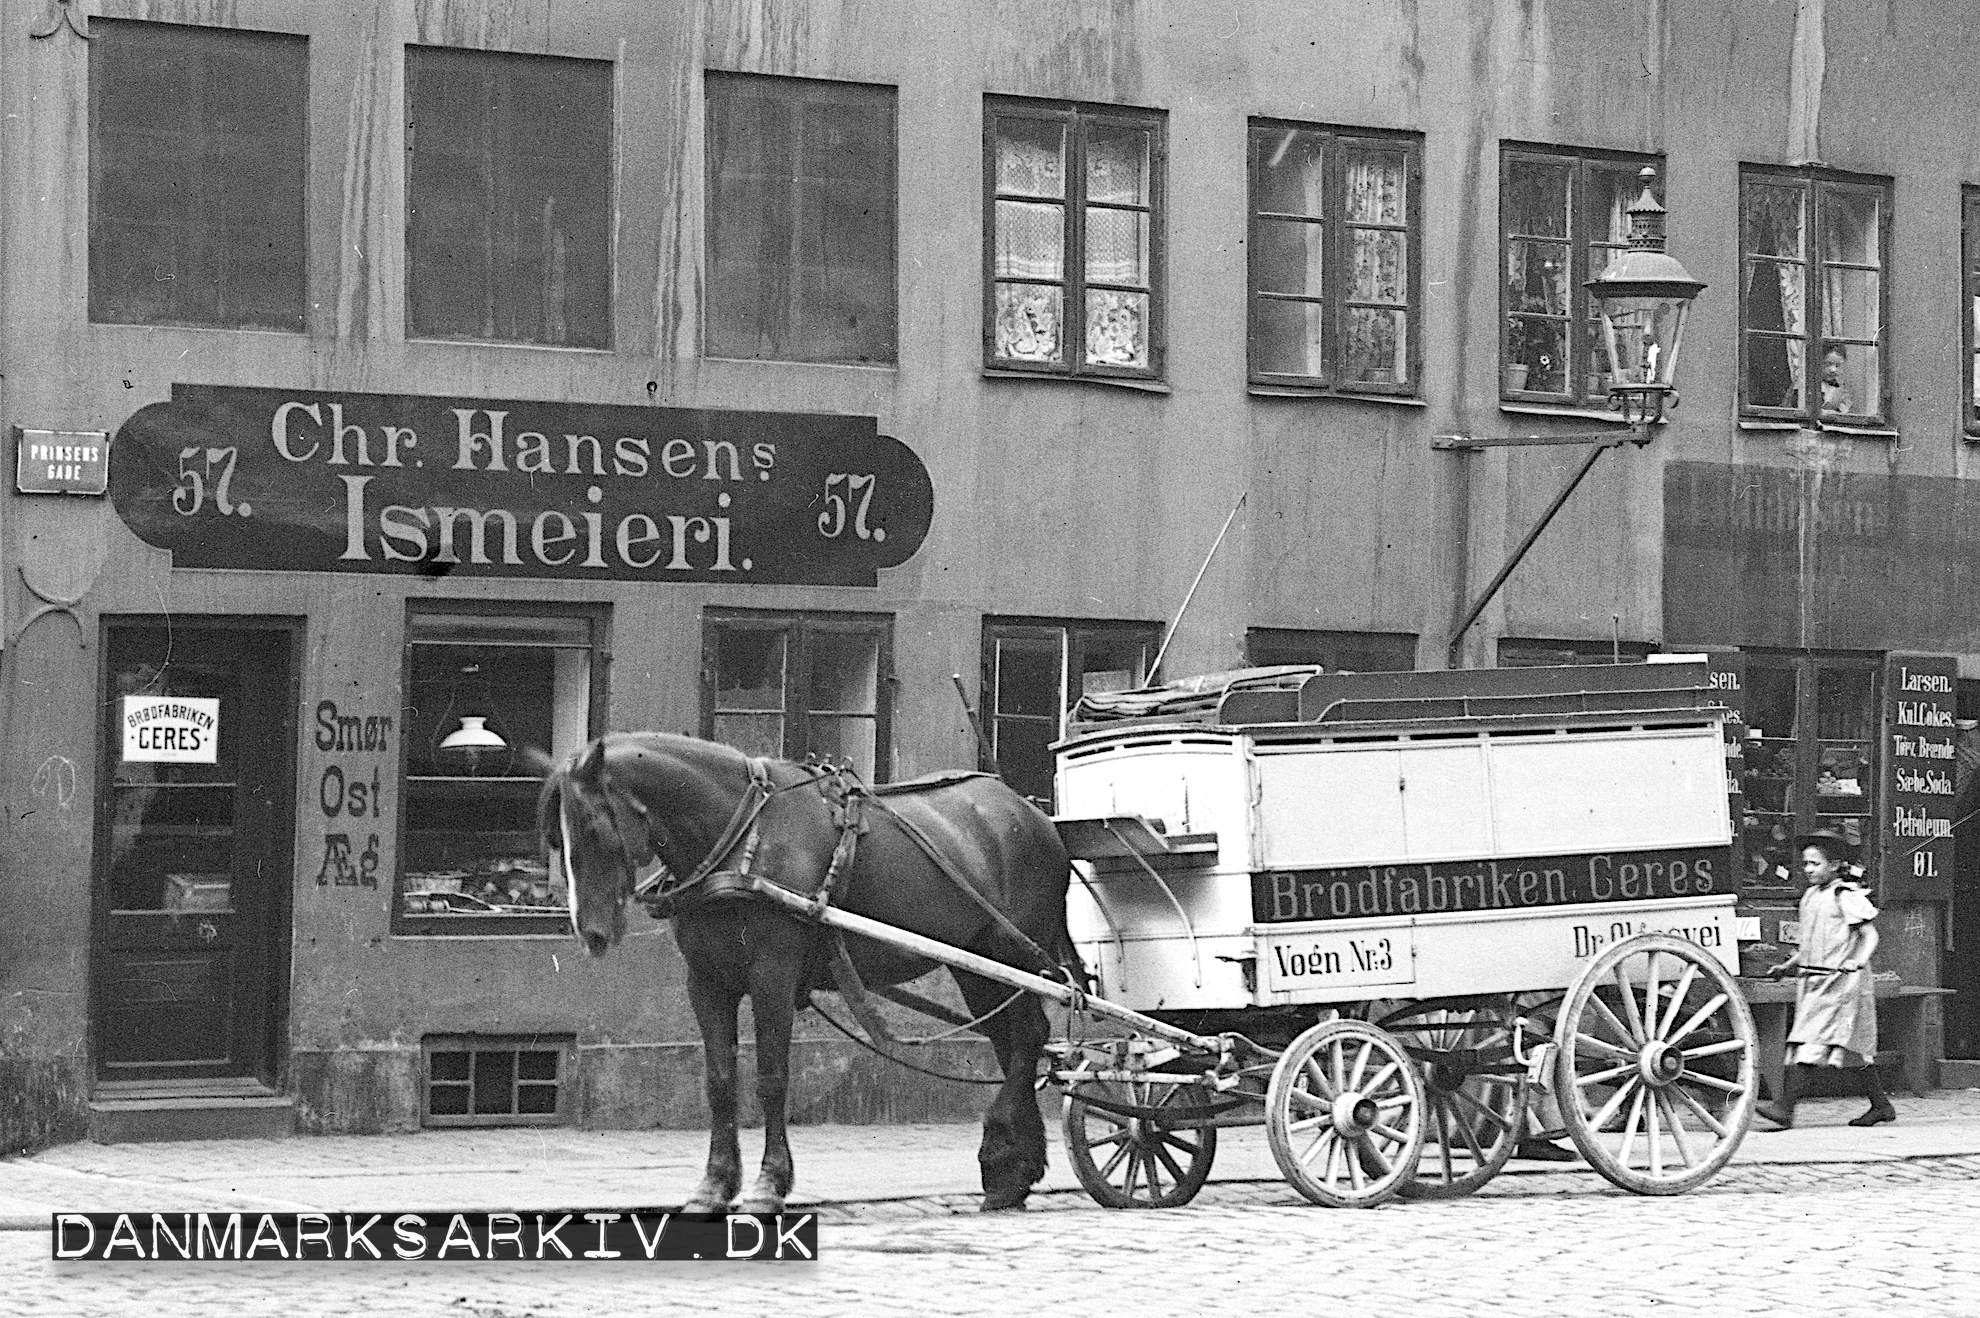 Brødfabrikken Ceres vogn holder parkeret foran deres udsalg hos Chr. Hansens Ismejeri - 1903